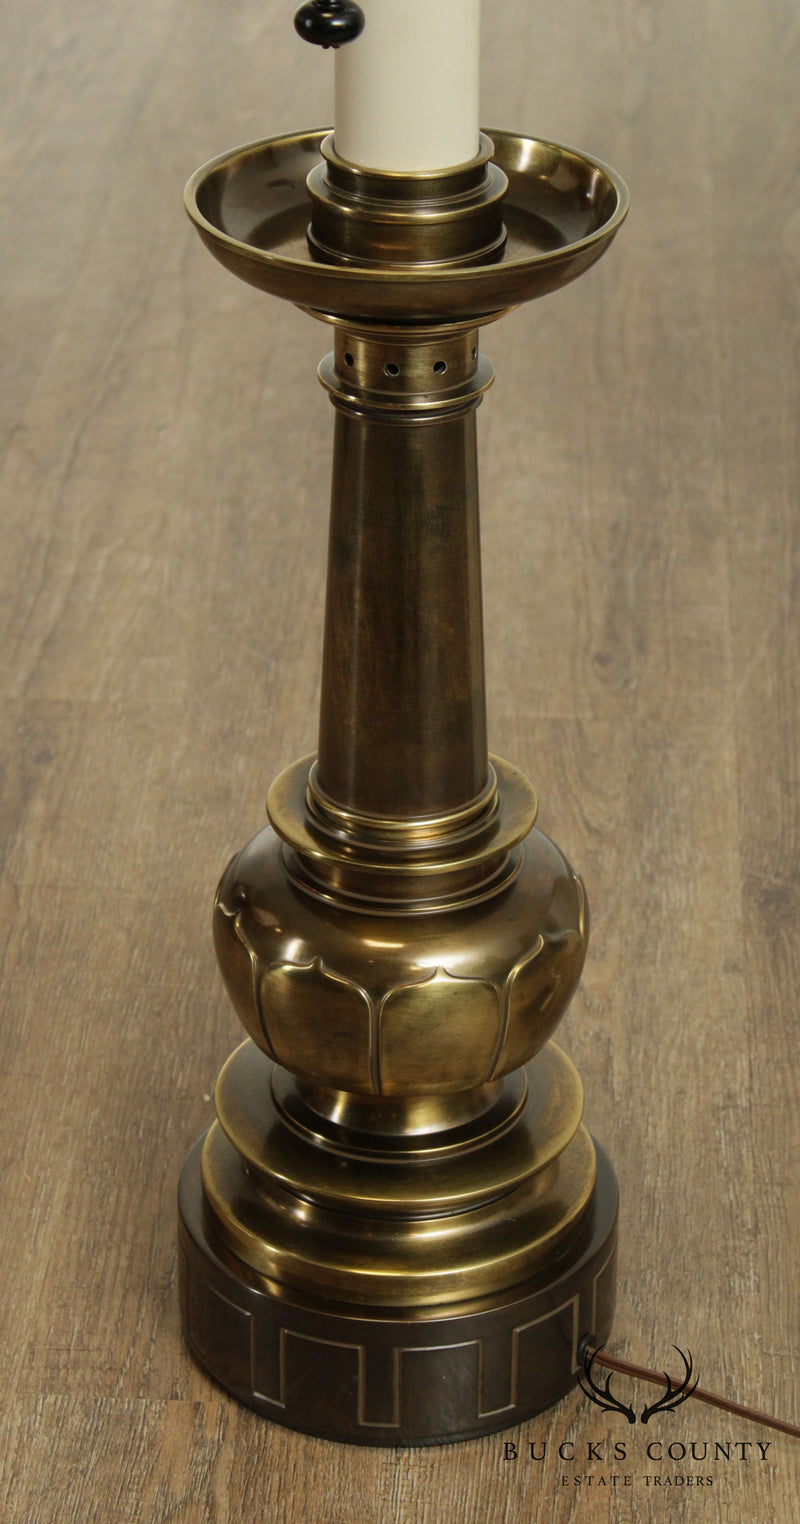 Stiffel Hollywood Regency Vintage Pair Brass Table Lamps